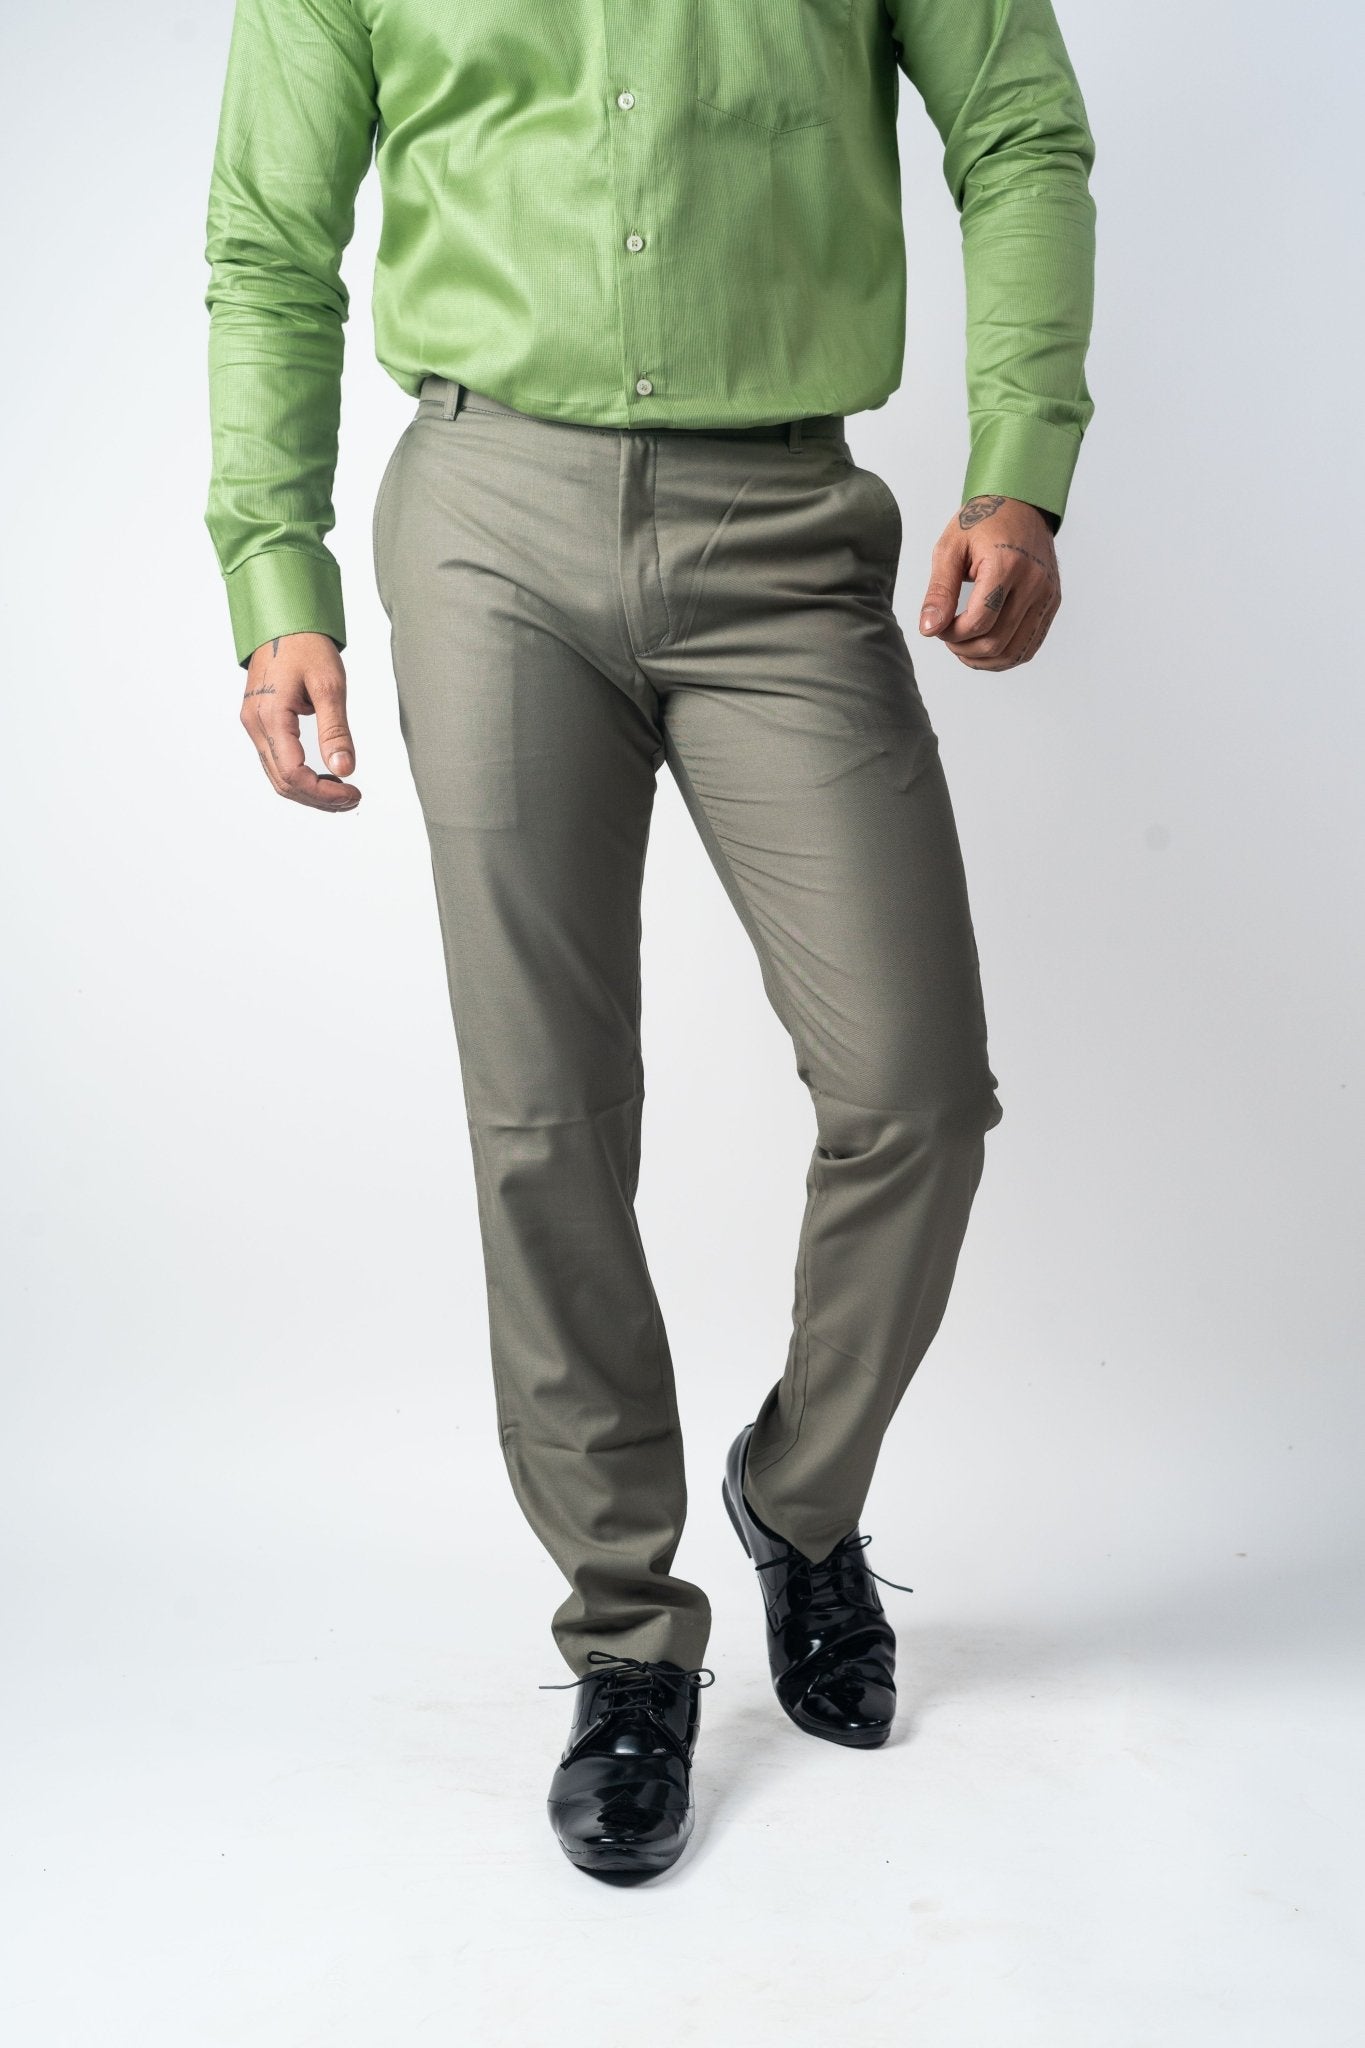 MBF66 Men Solid Casual Green Shirt - Buy MBF66 Men Solid Casual Green Shirt  Online at Best Prices in India | Flipkart.com